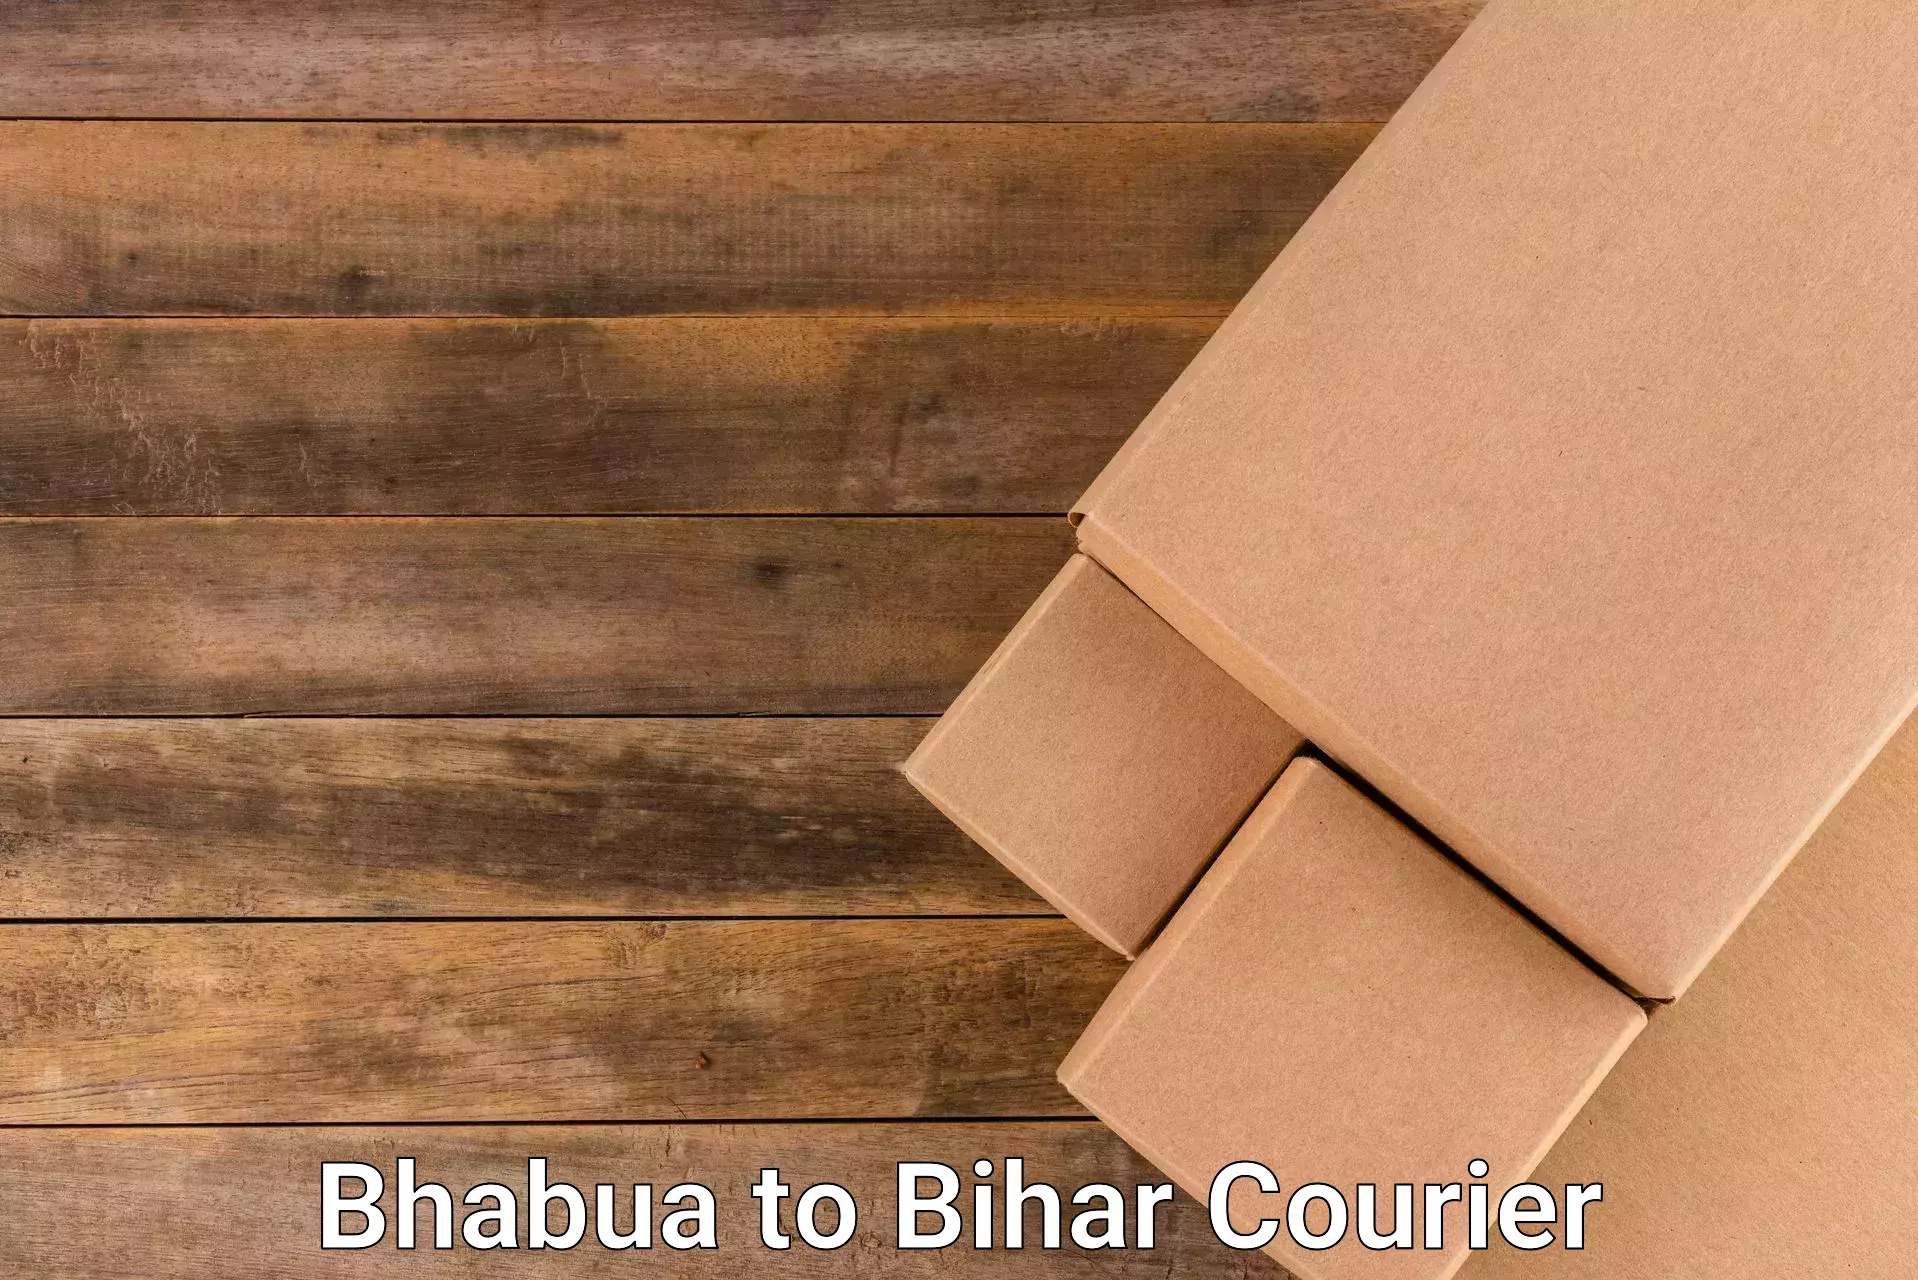 24-hour courier service Bhabua to Khizarsarai